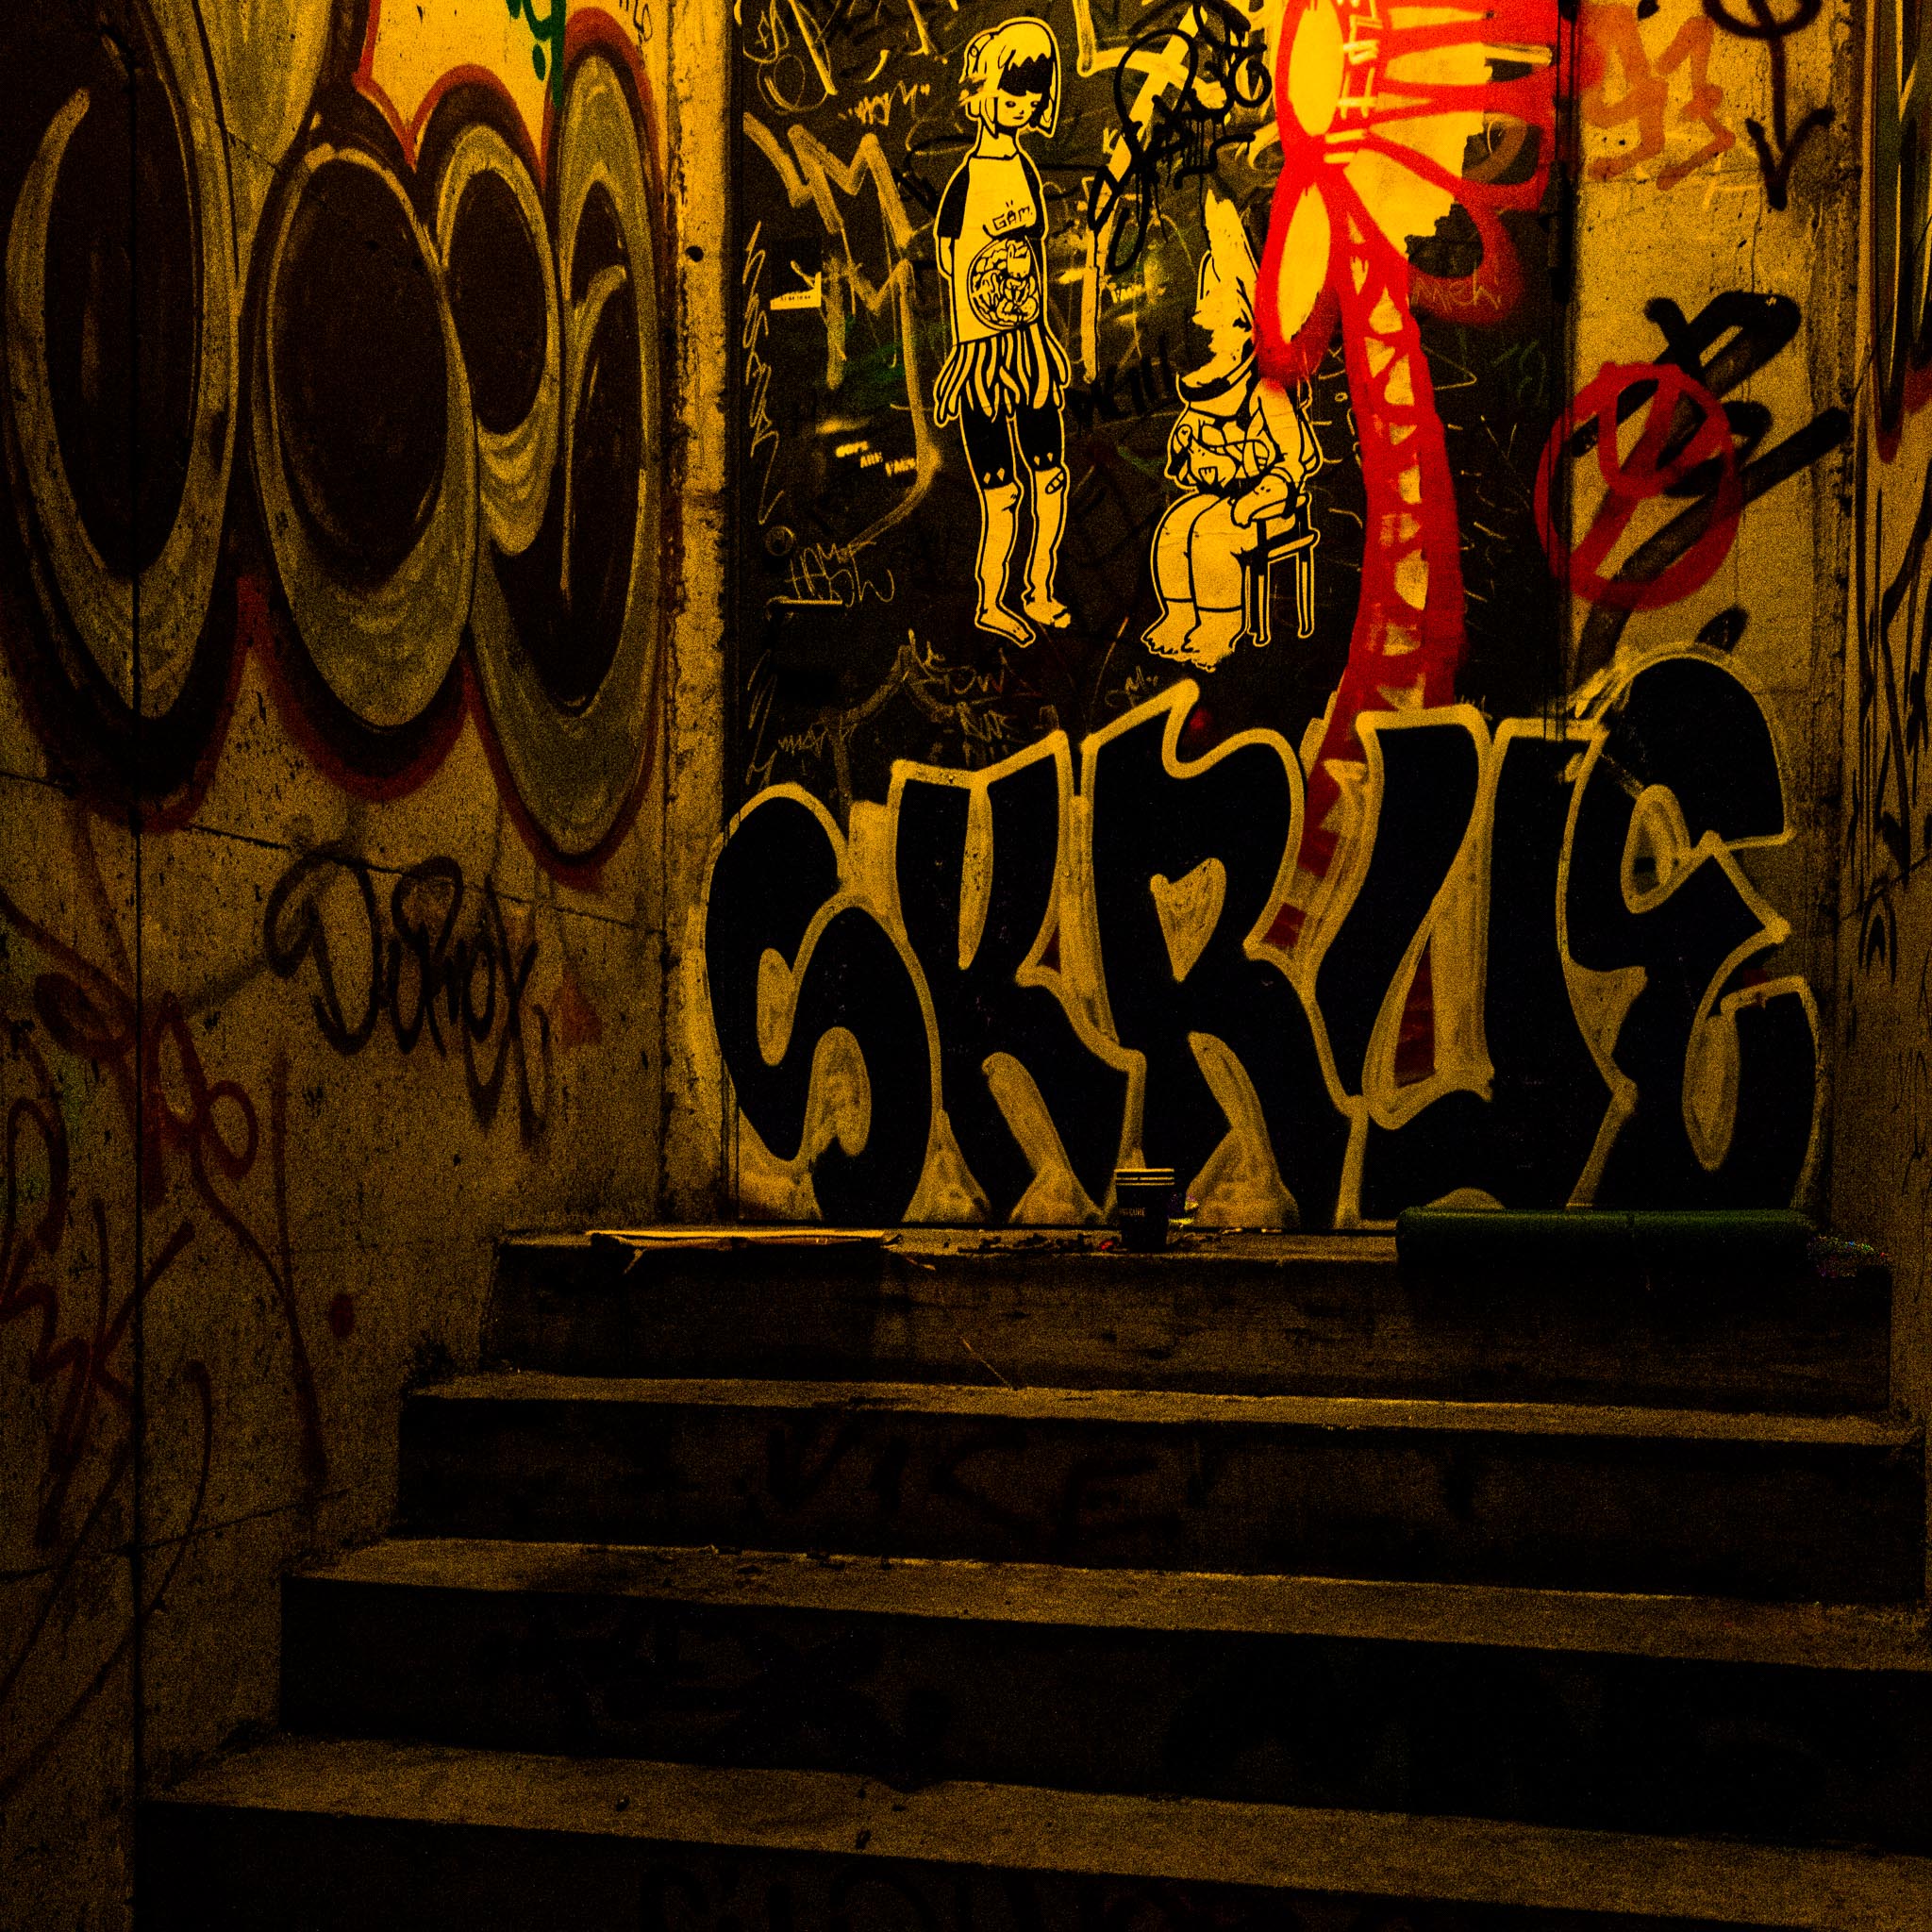 Veggbilder |  | Stairs to where? | fotokunst kunstfoto foto kunst bilder aluminiumsplate wall art